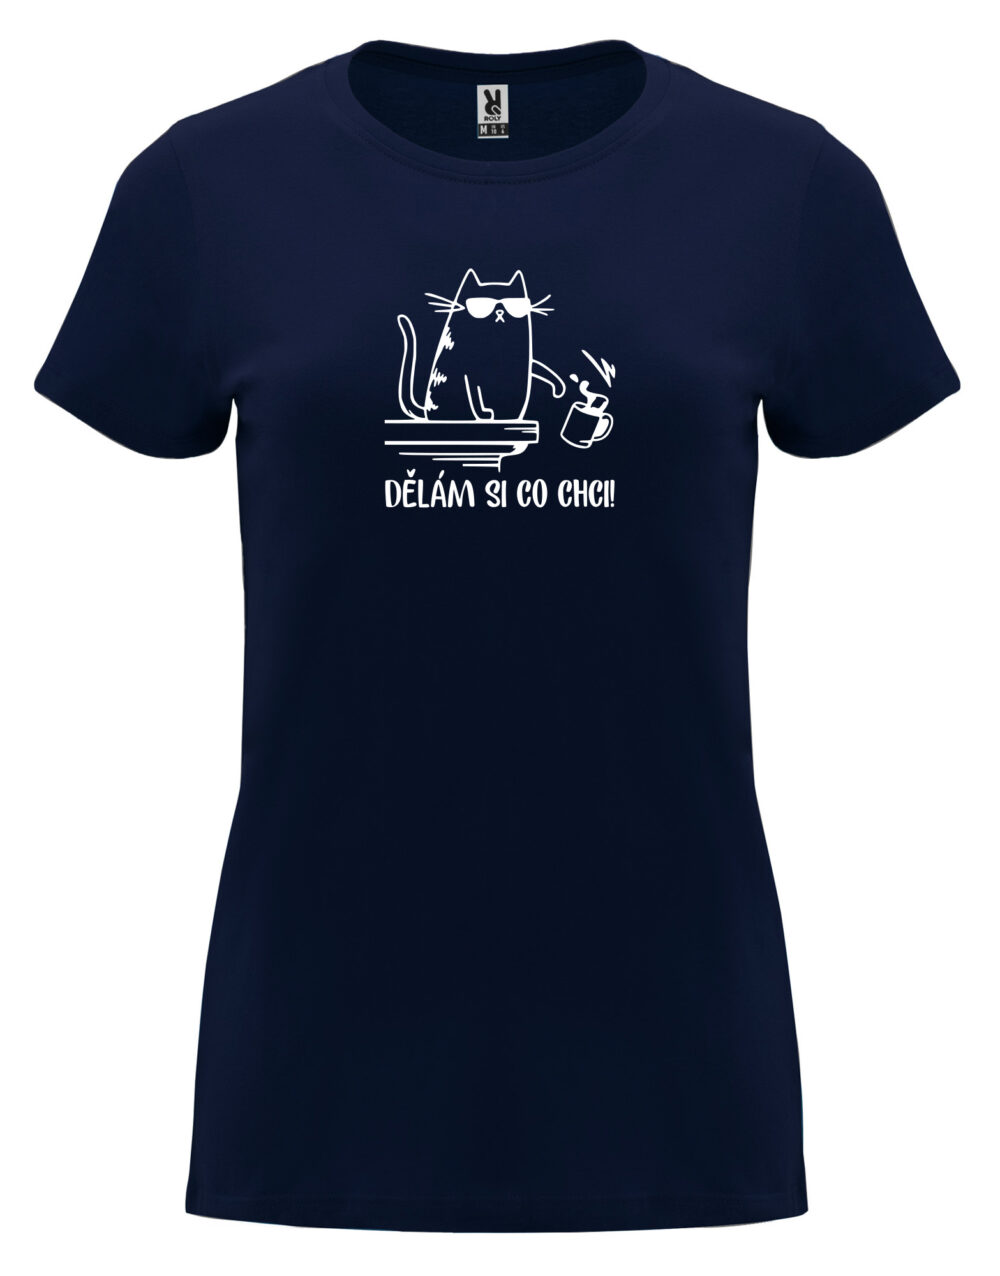 Dámské tričko s potiskem Dělám si co chci námořní modrá